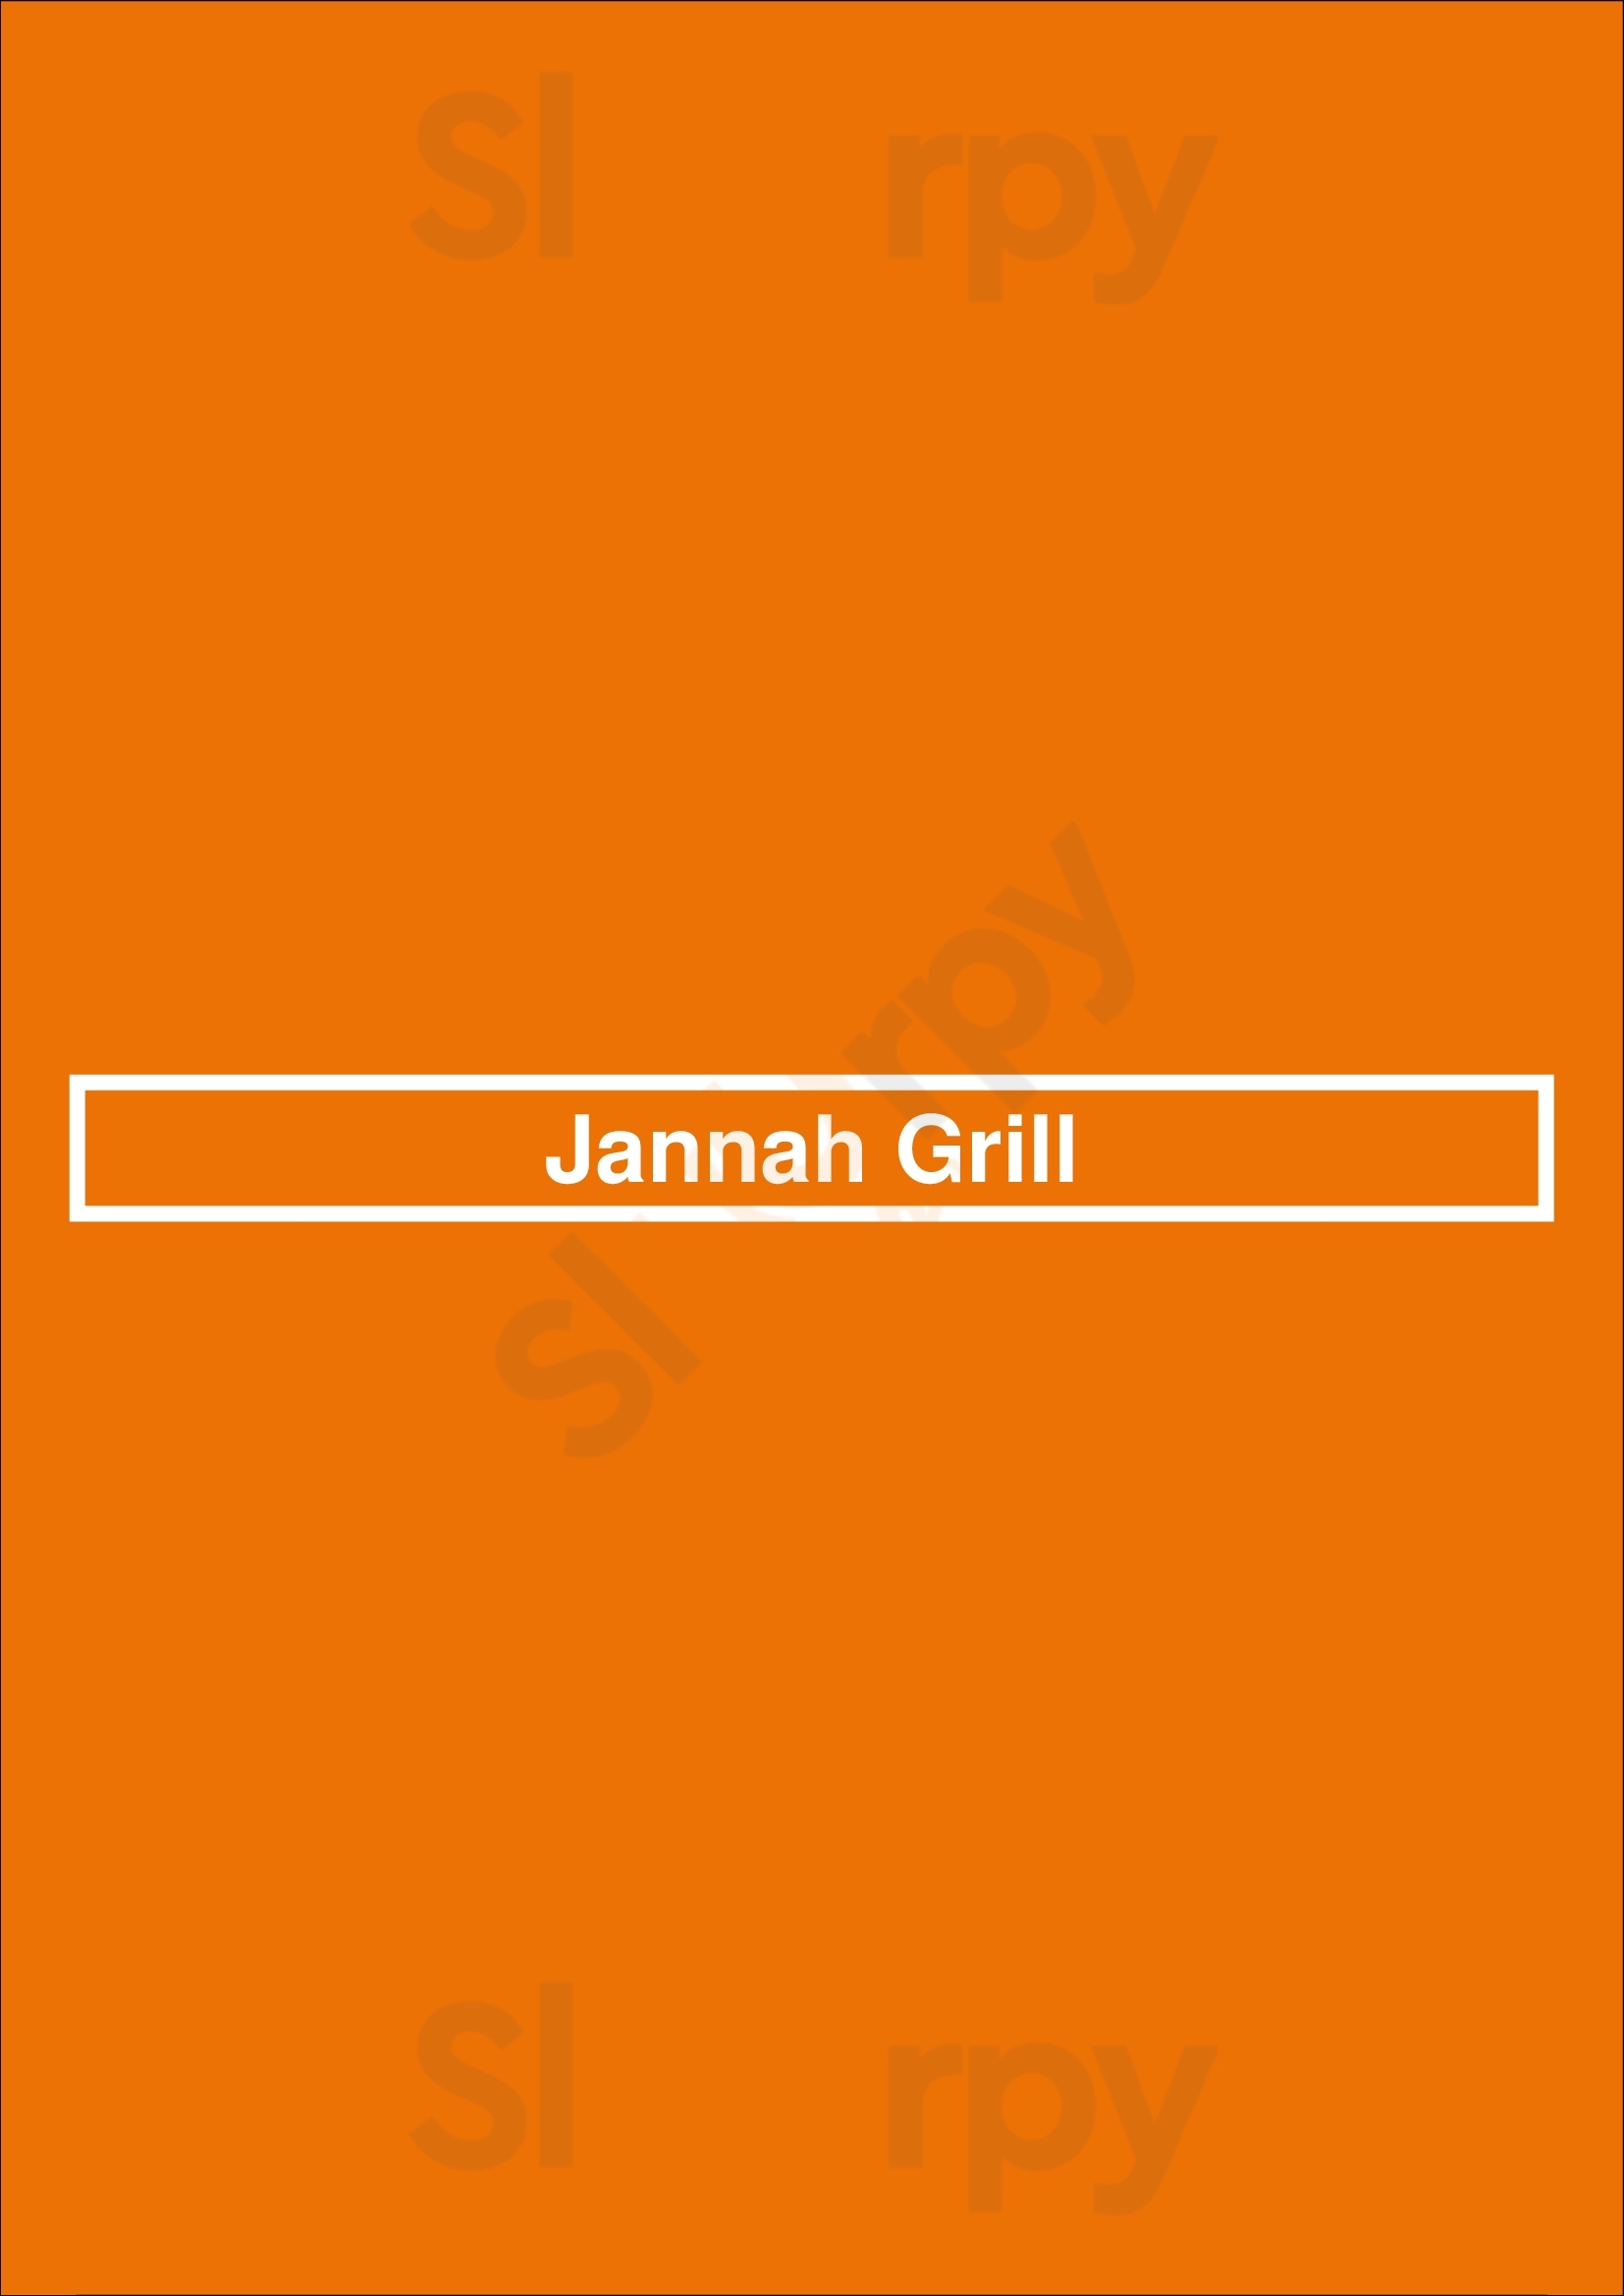 Jannah Grill London Menu - 1